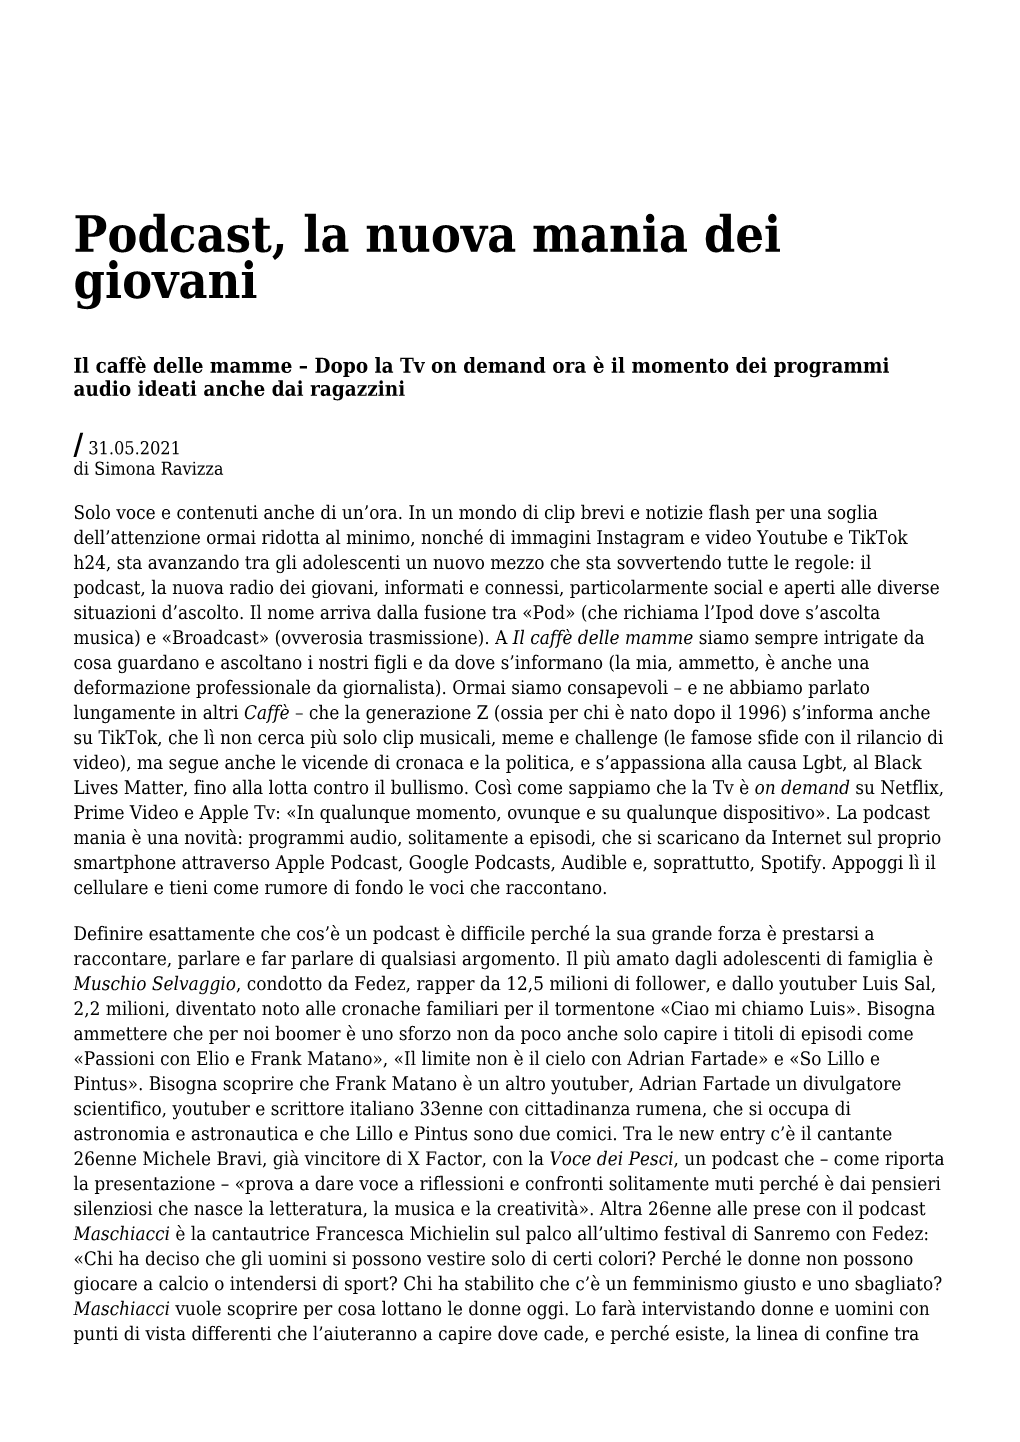 Settimanale Di Migros Ticino Podcast, La Nuova Mania Dei